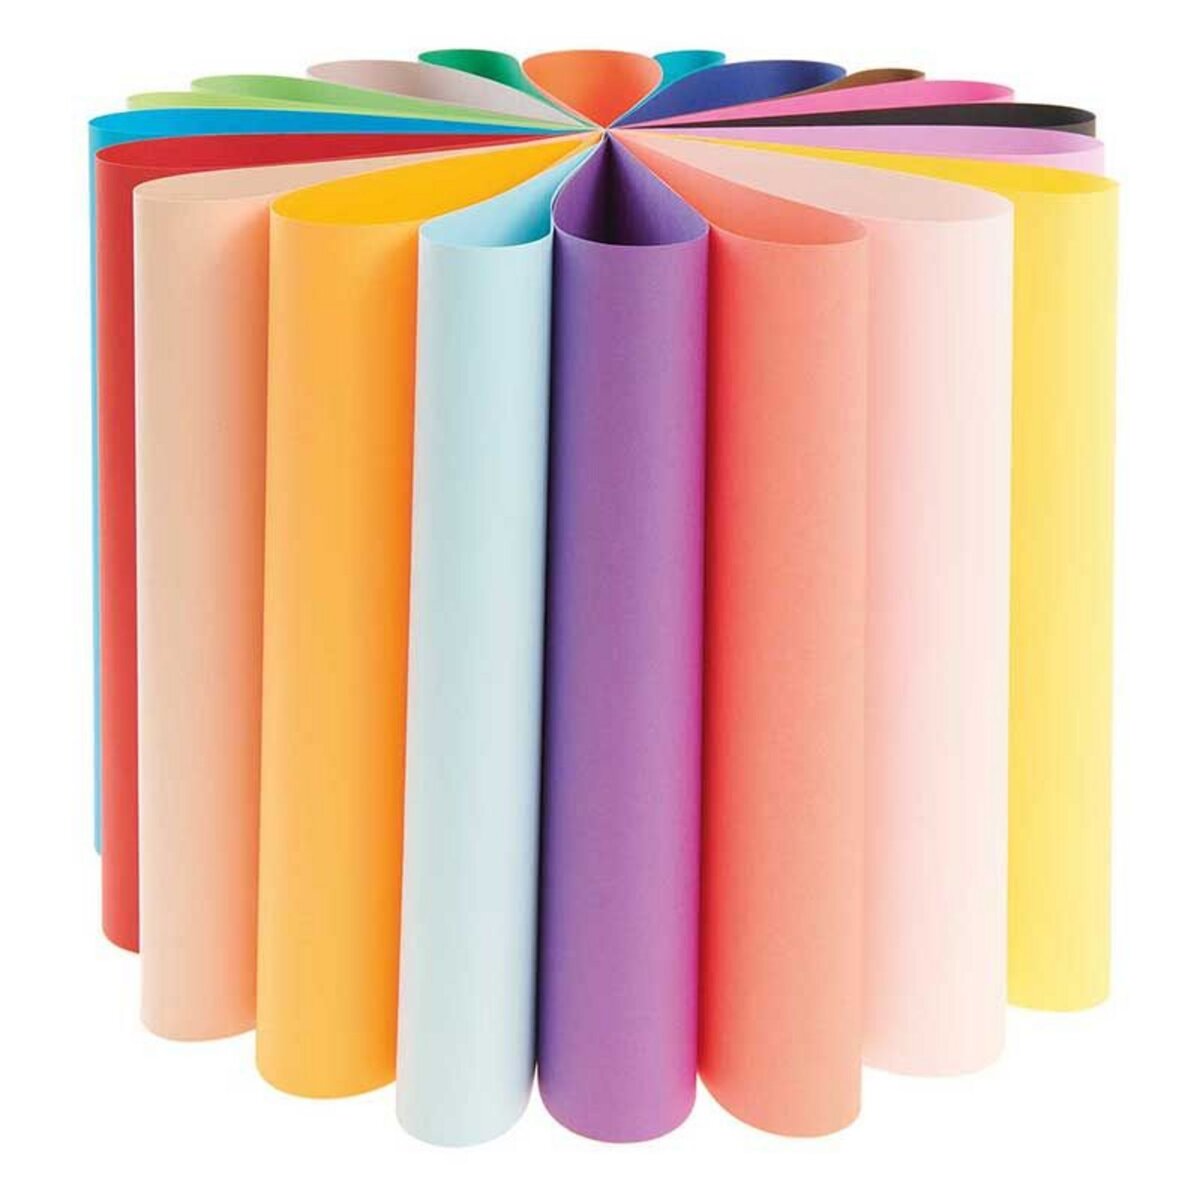 RICO DESIGN 20 feuilles de papier A3 160 g - Multicolore pas cher